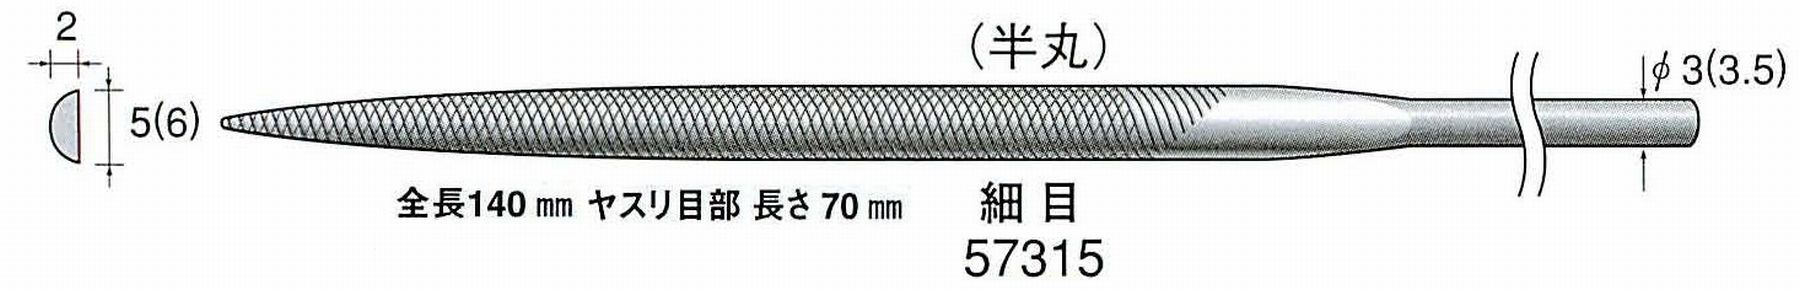 ナカニシ/NAKANISHI 精密仕上げヤスリ 半丸 細目 軸径(シャンク)φ3.0mm(3.5) 57315